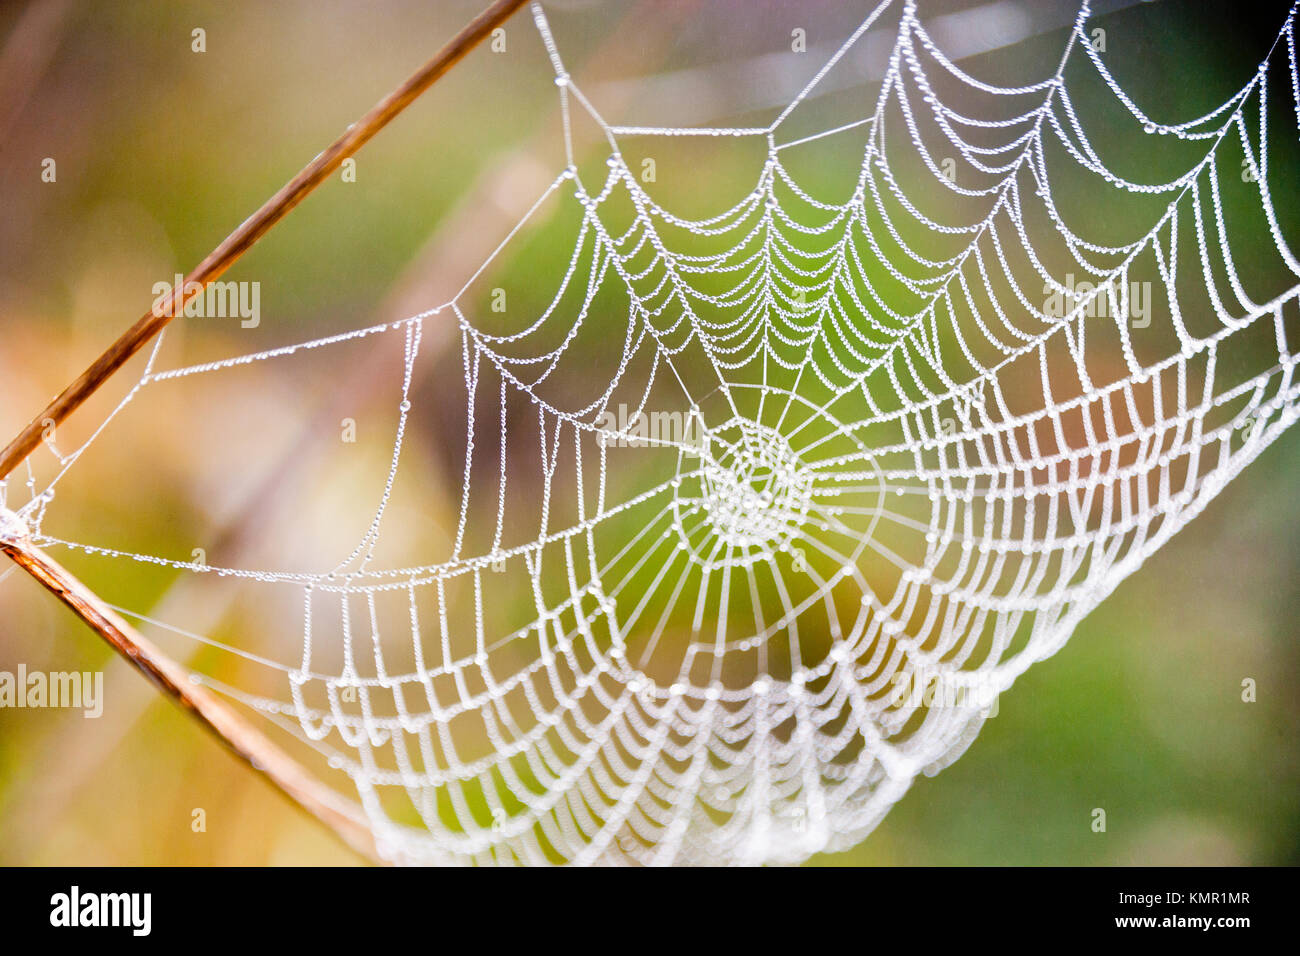 Das Spinnennetz mit Tautropfen am Morgen/pavoučí síť s kapkami Rosy Stockfoto